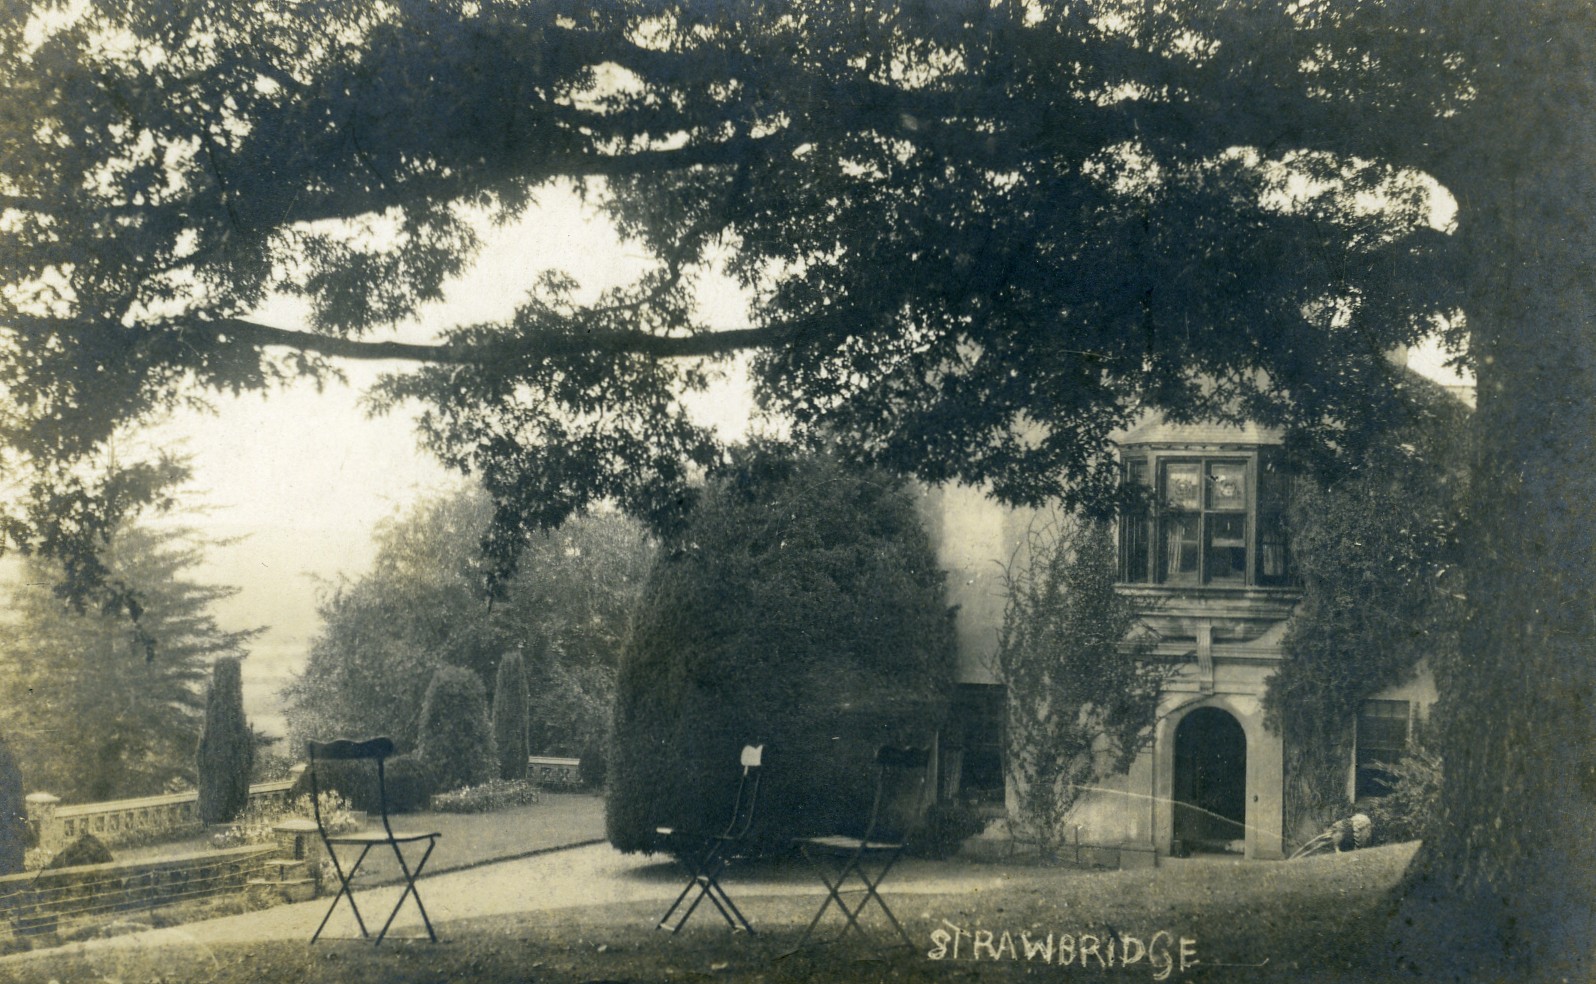 Strawbridge House 1920's